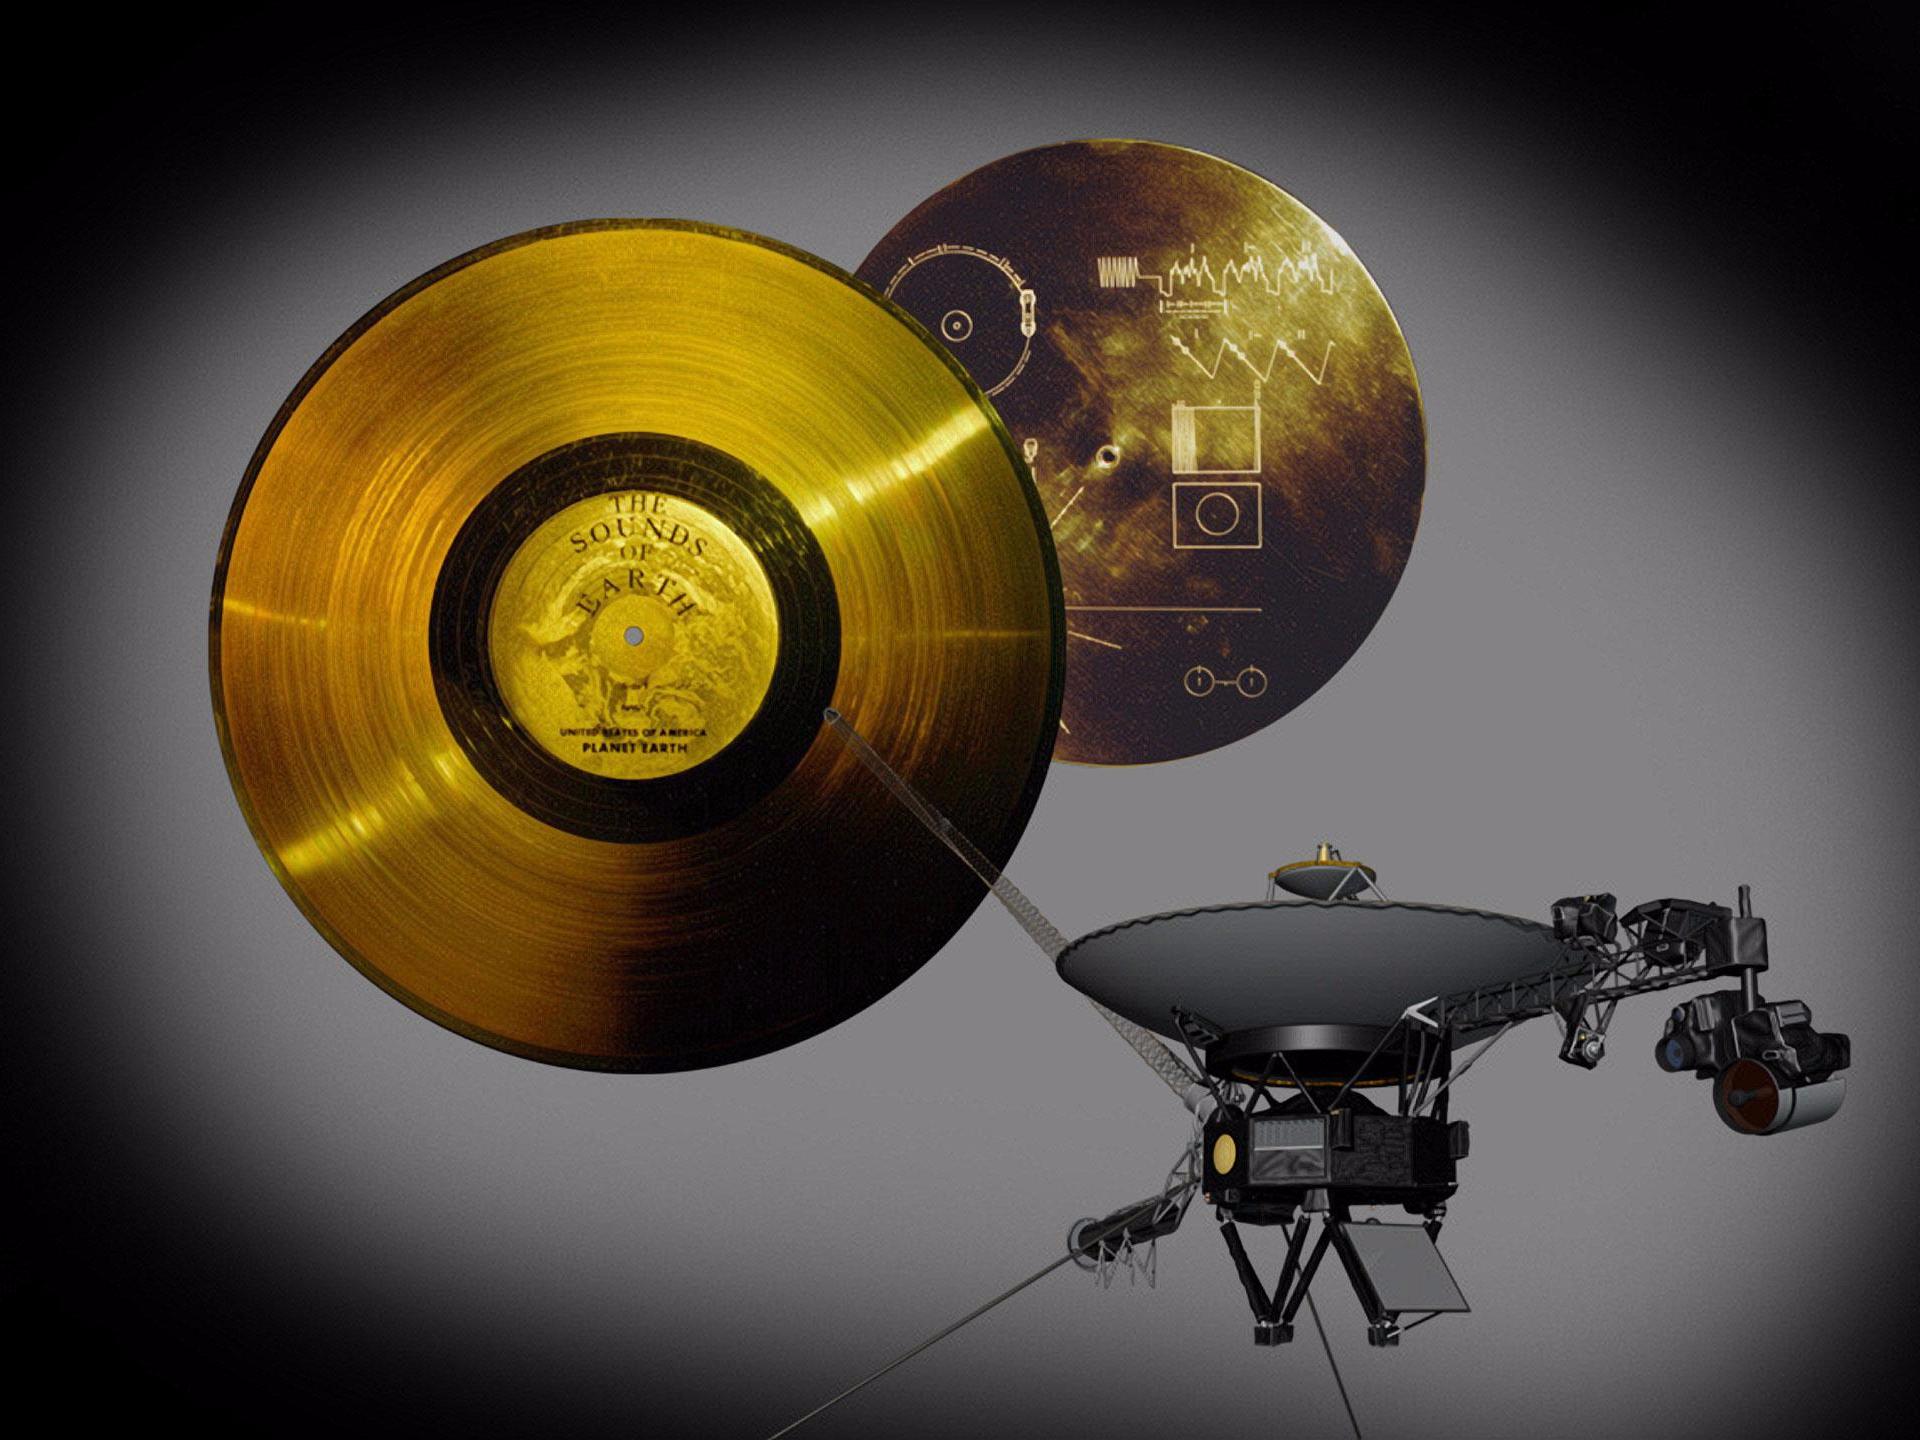 惑星探査機ボイジャーと、ゴールデンレコードとそのカバー